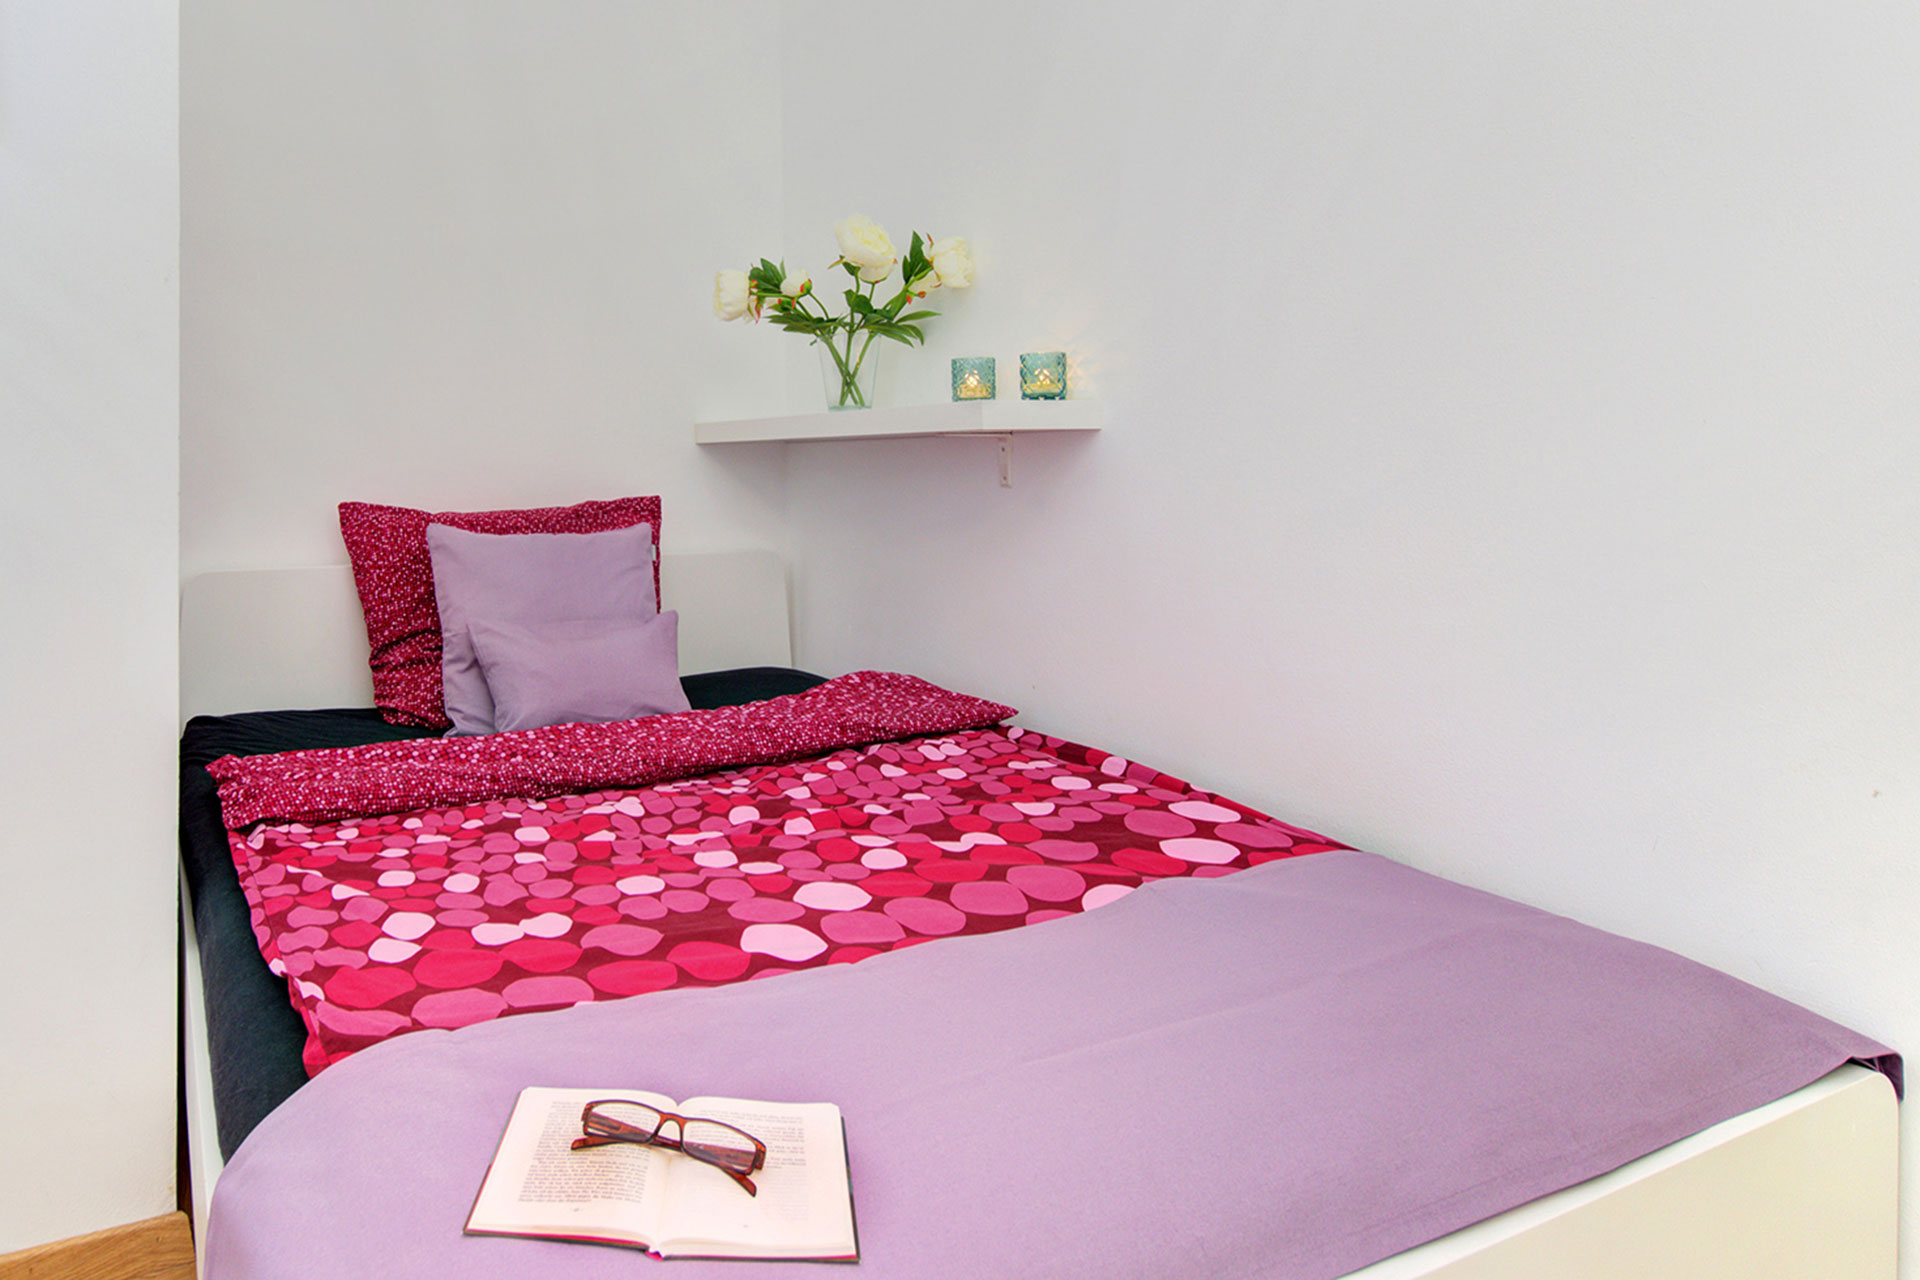 fotografin dekoriert einzelbett in lila mit bettläufer und kleinem kissen in fliederfarbe